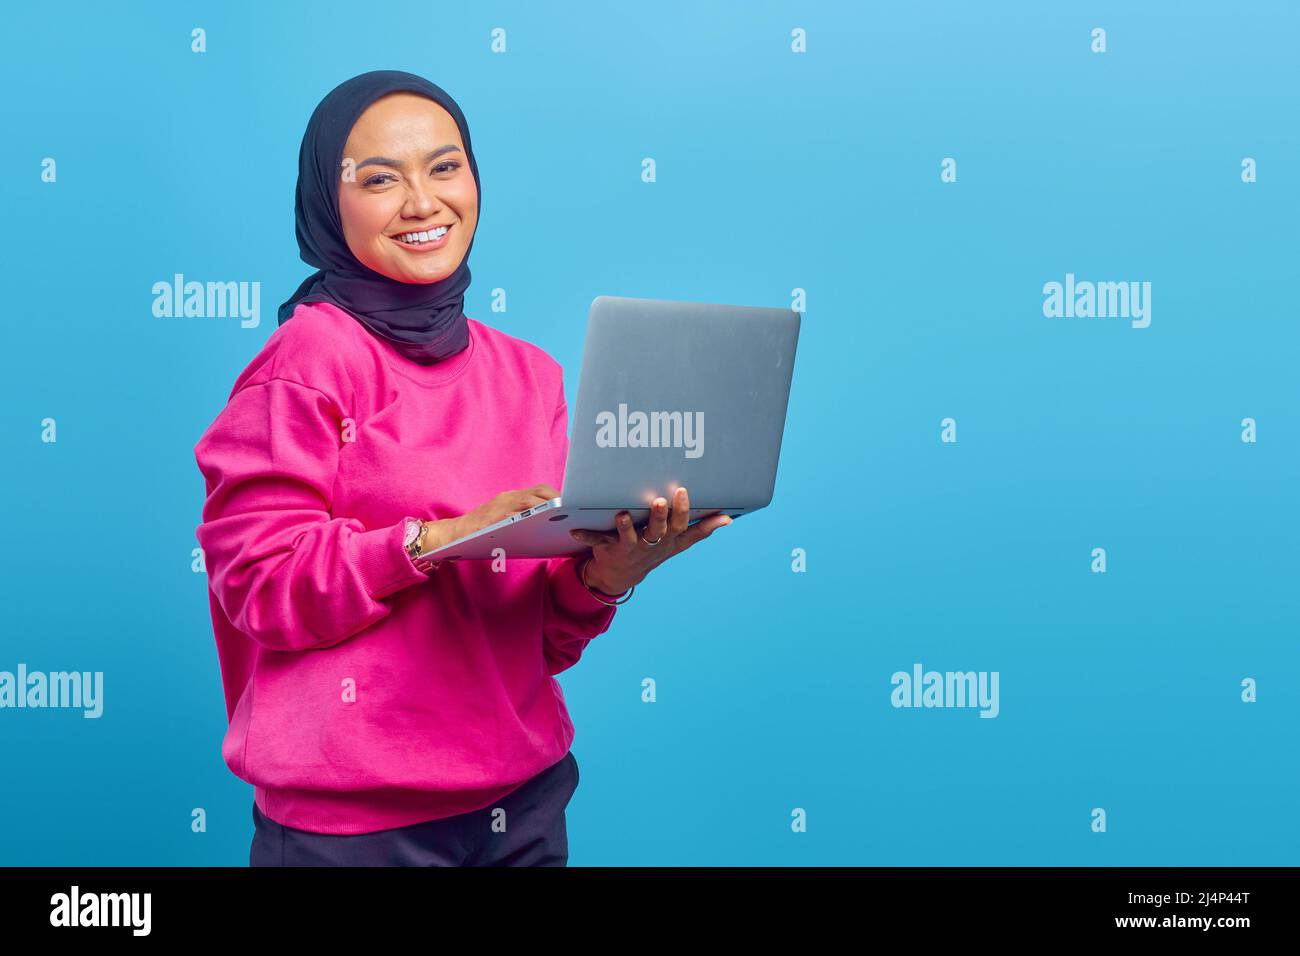 Primo piano della ragazza musulmana asiatica, tenendo il portatile in mano su sfondo blu Foto Stock